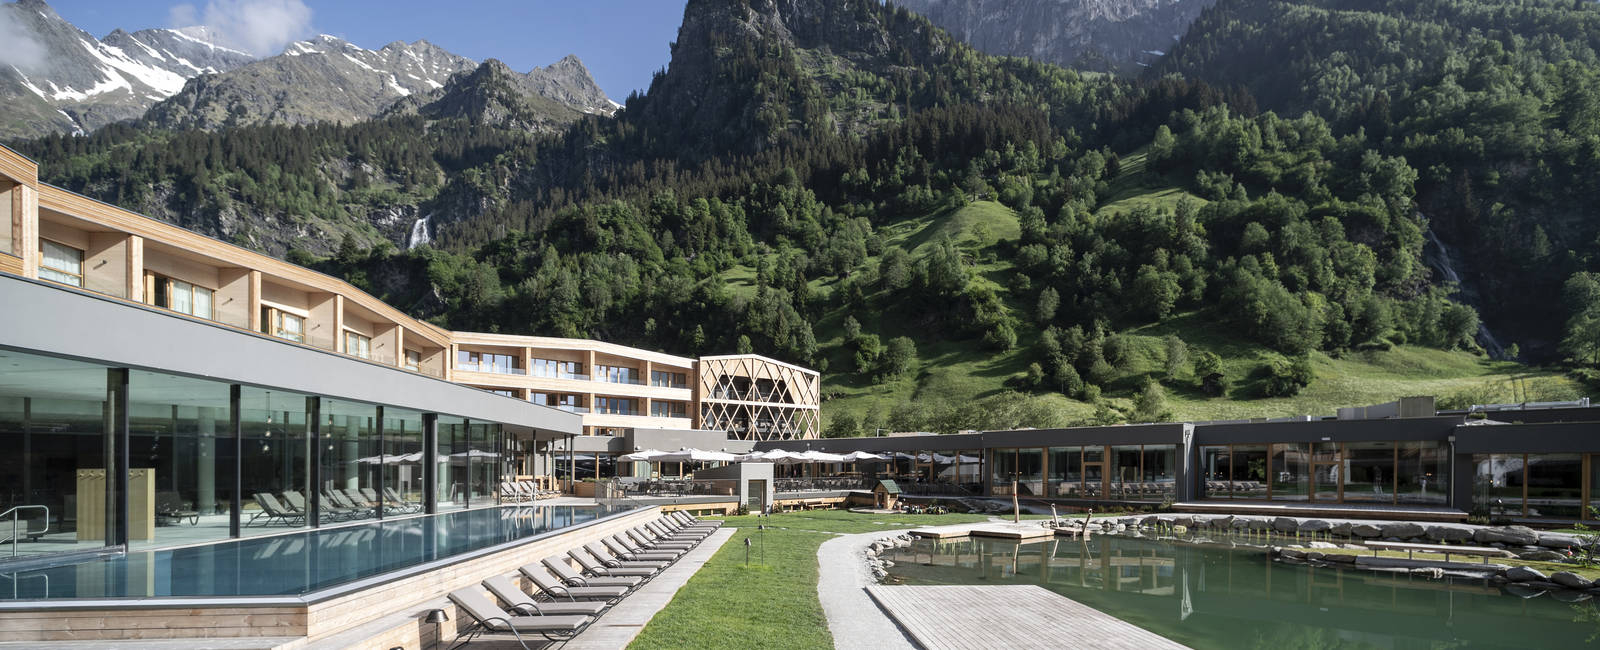  Hotel des Monats 

Die besten Luxushotels Südtirols